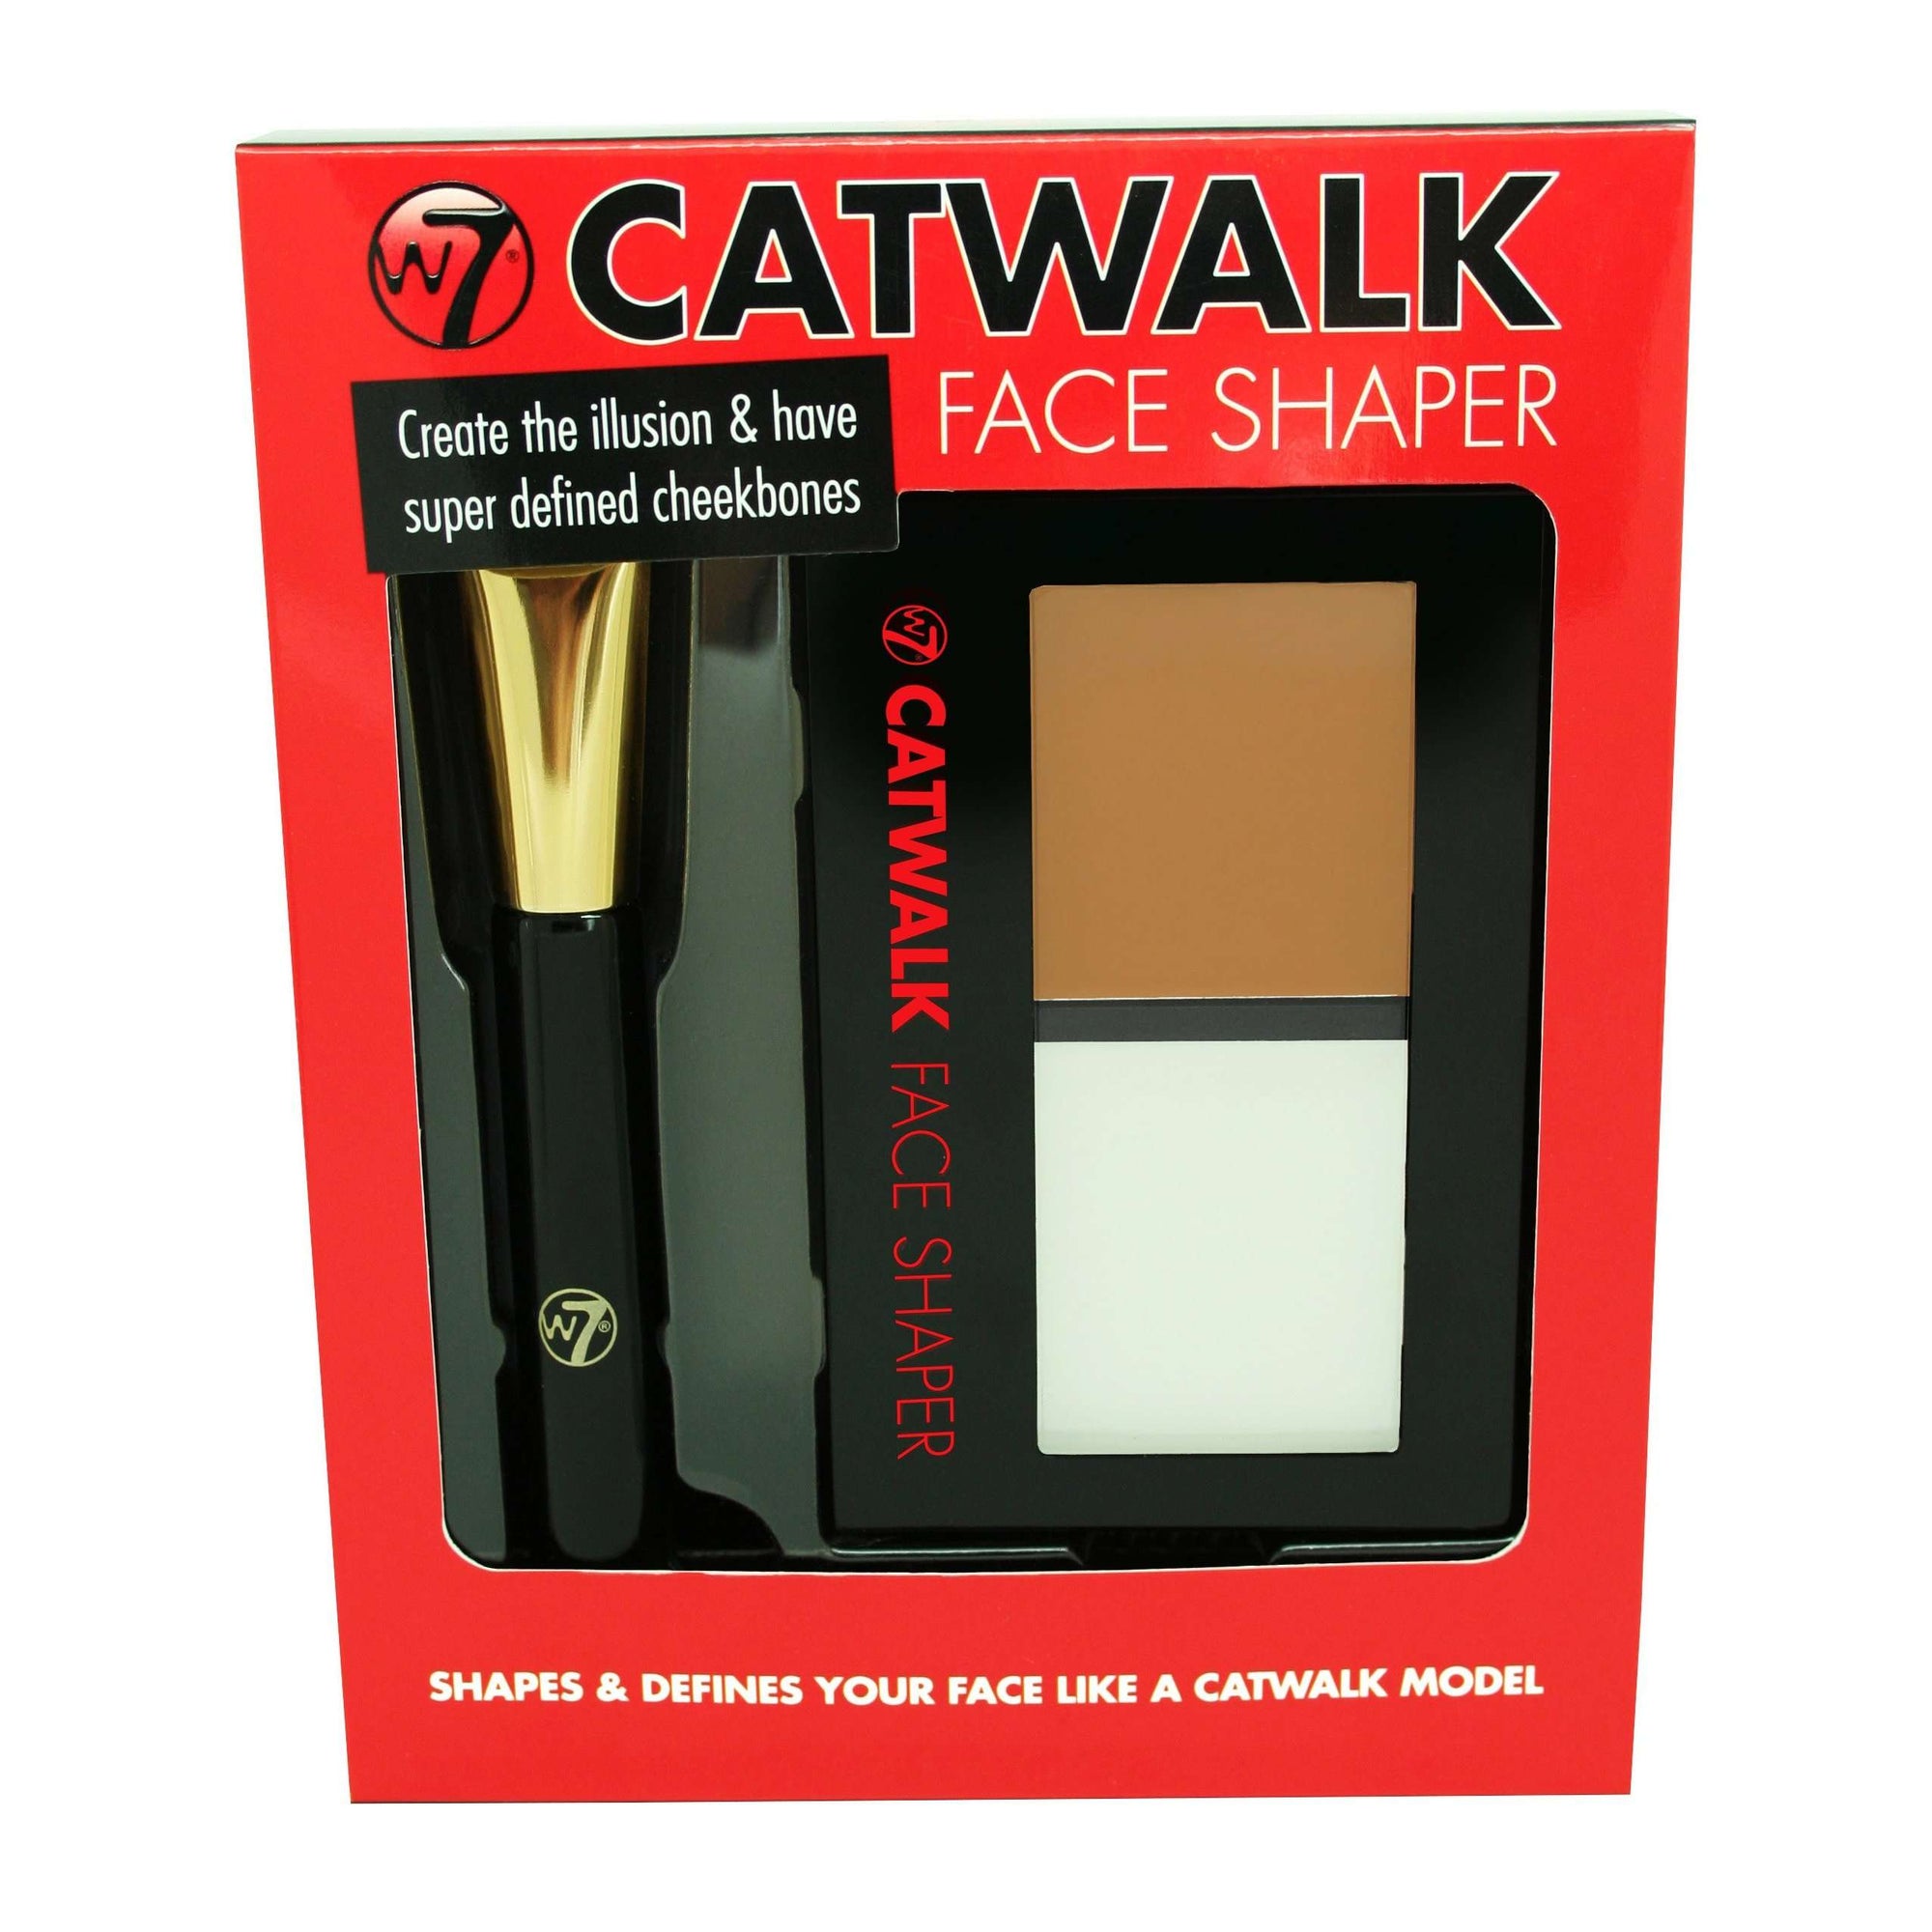 W7 Catwalk Face Shaper